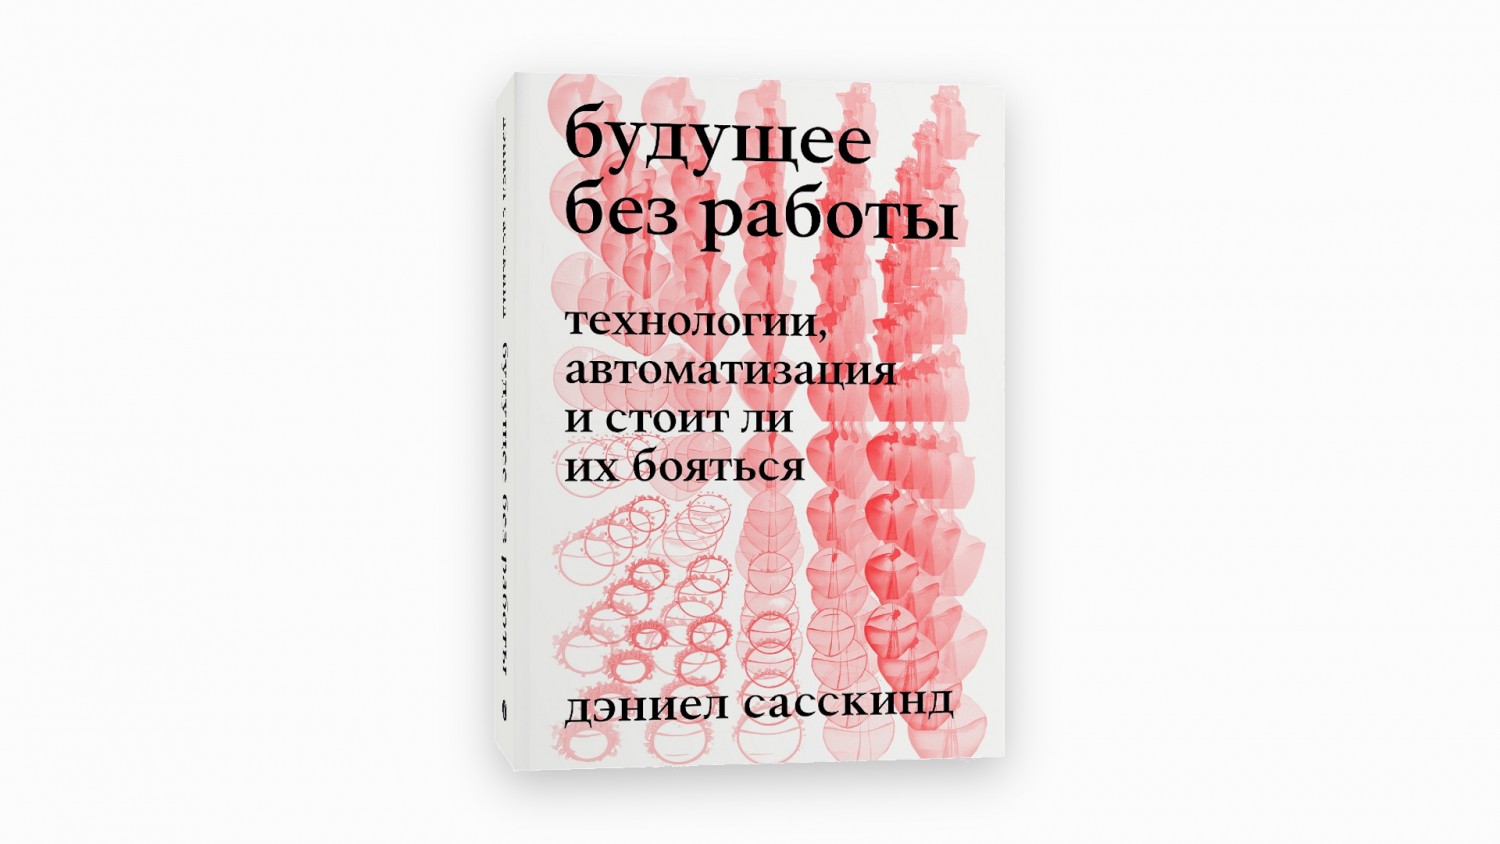 В России издали книгу зарубежного автора, которую перевели «Яндекс.Переводчиком»